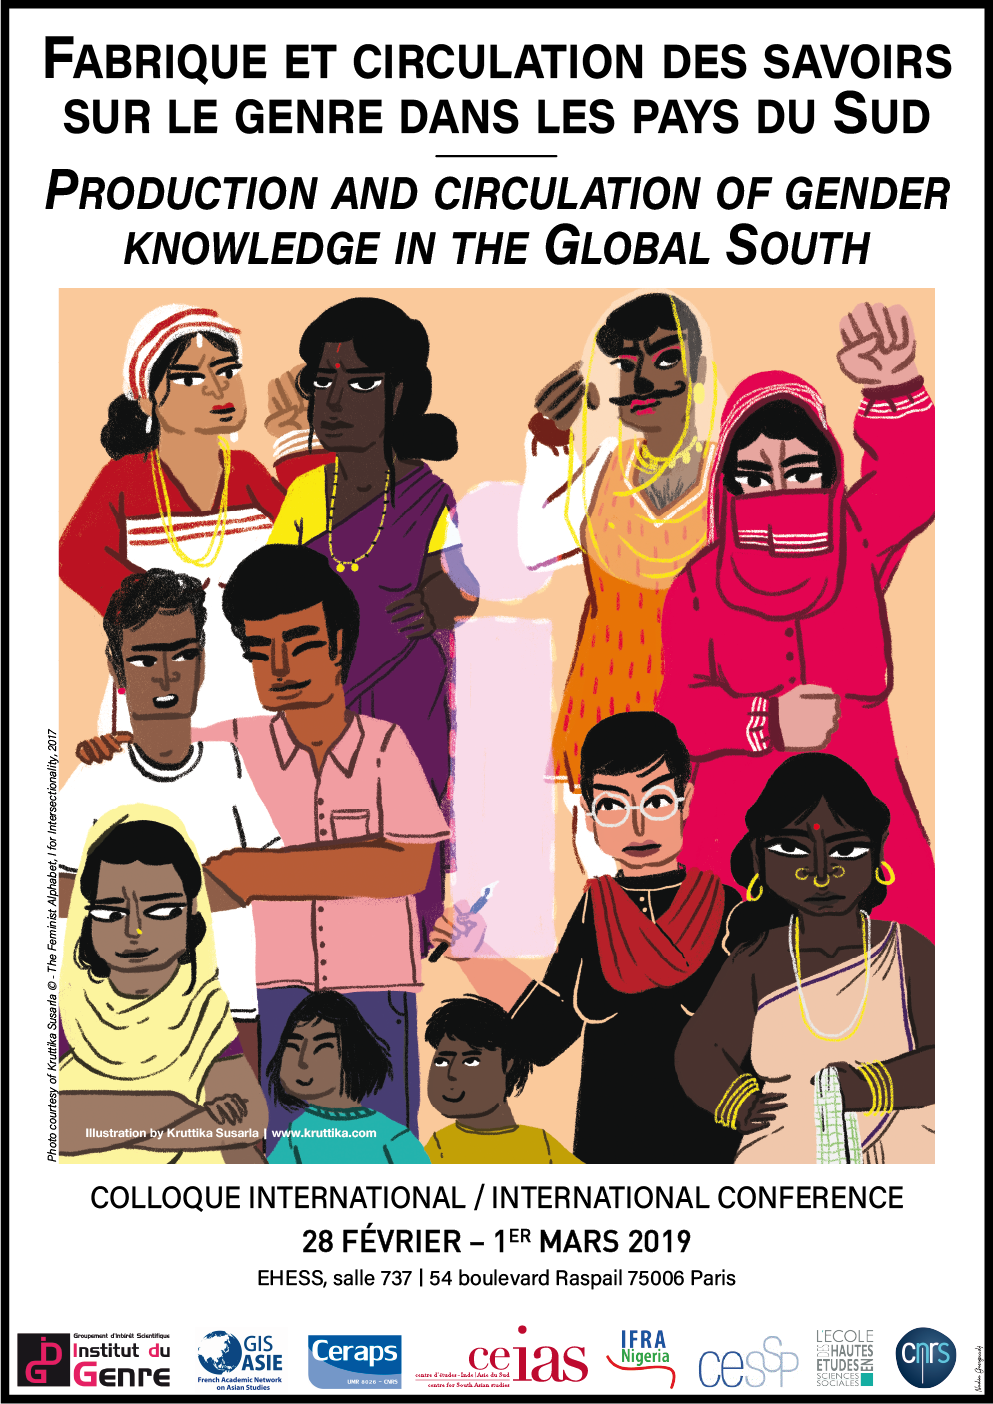 Fabrique et circulation des savoirs sur le genre dans les pays du Sud